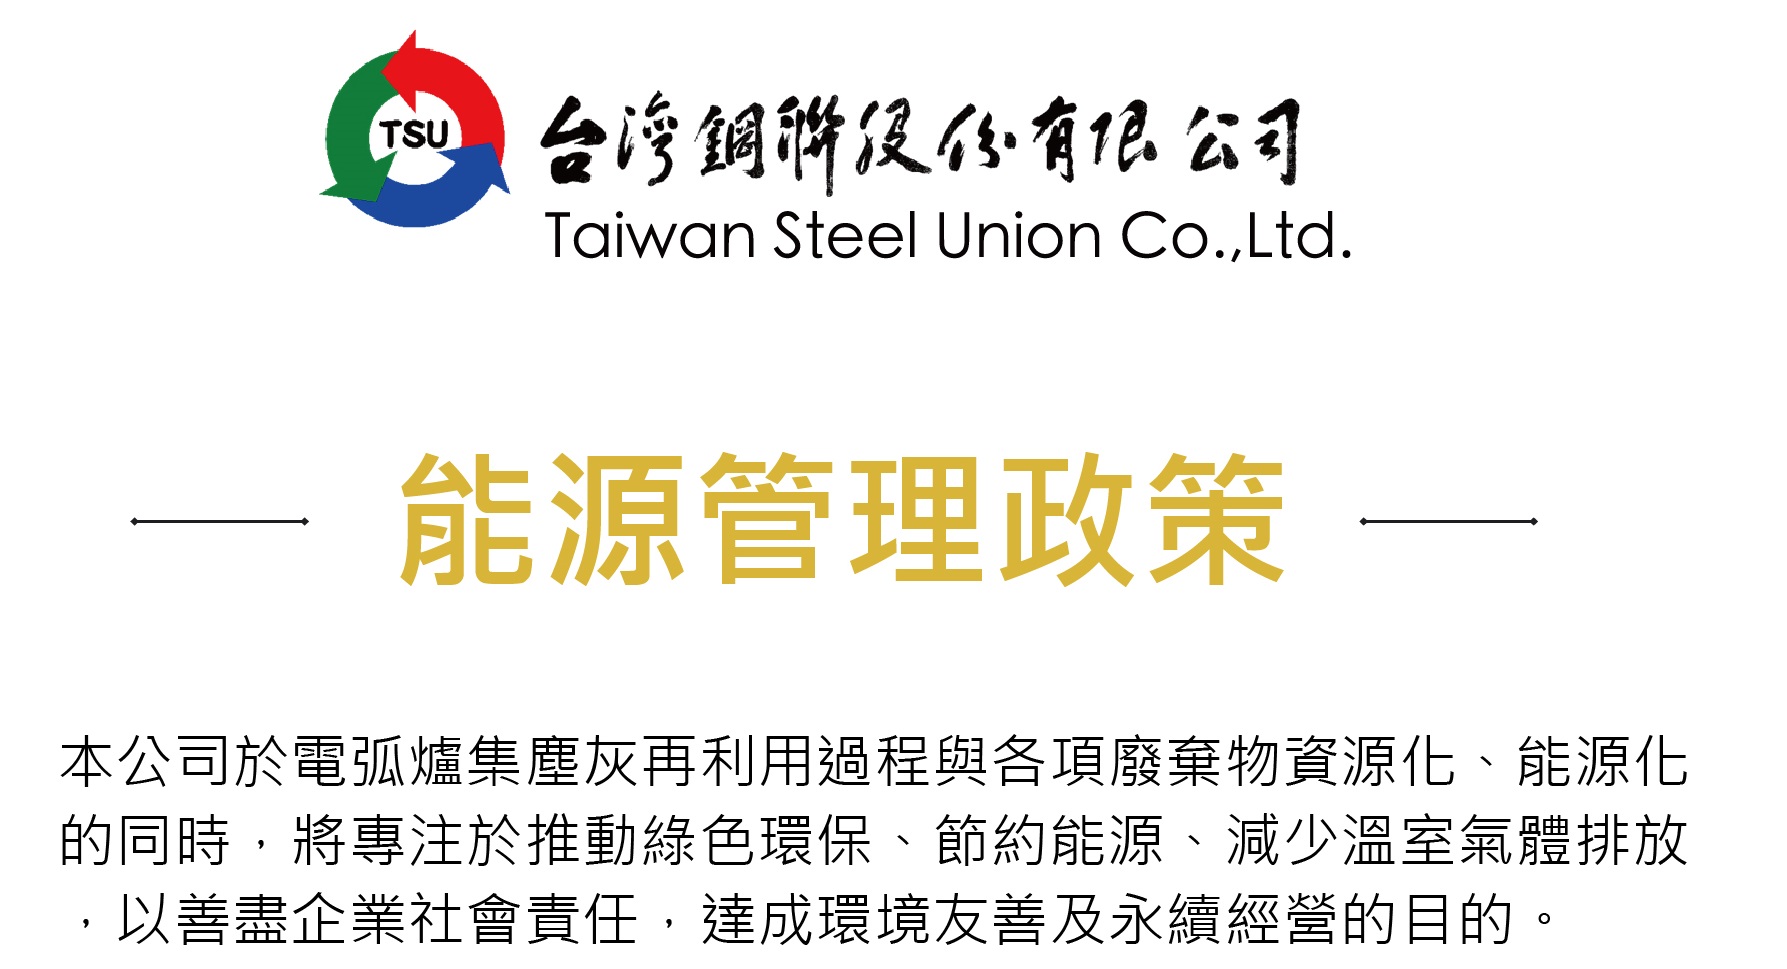 關於台灣鋼聯